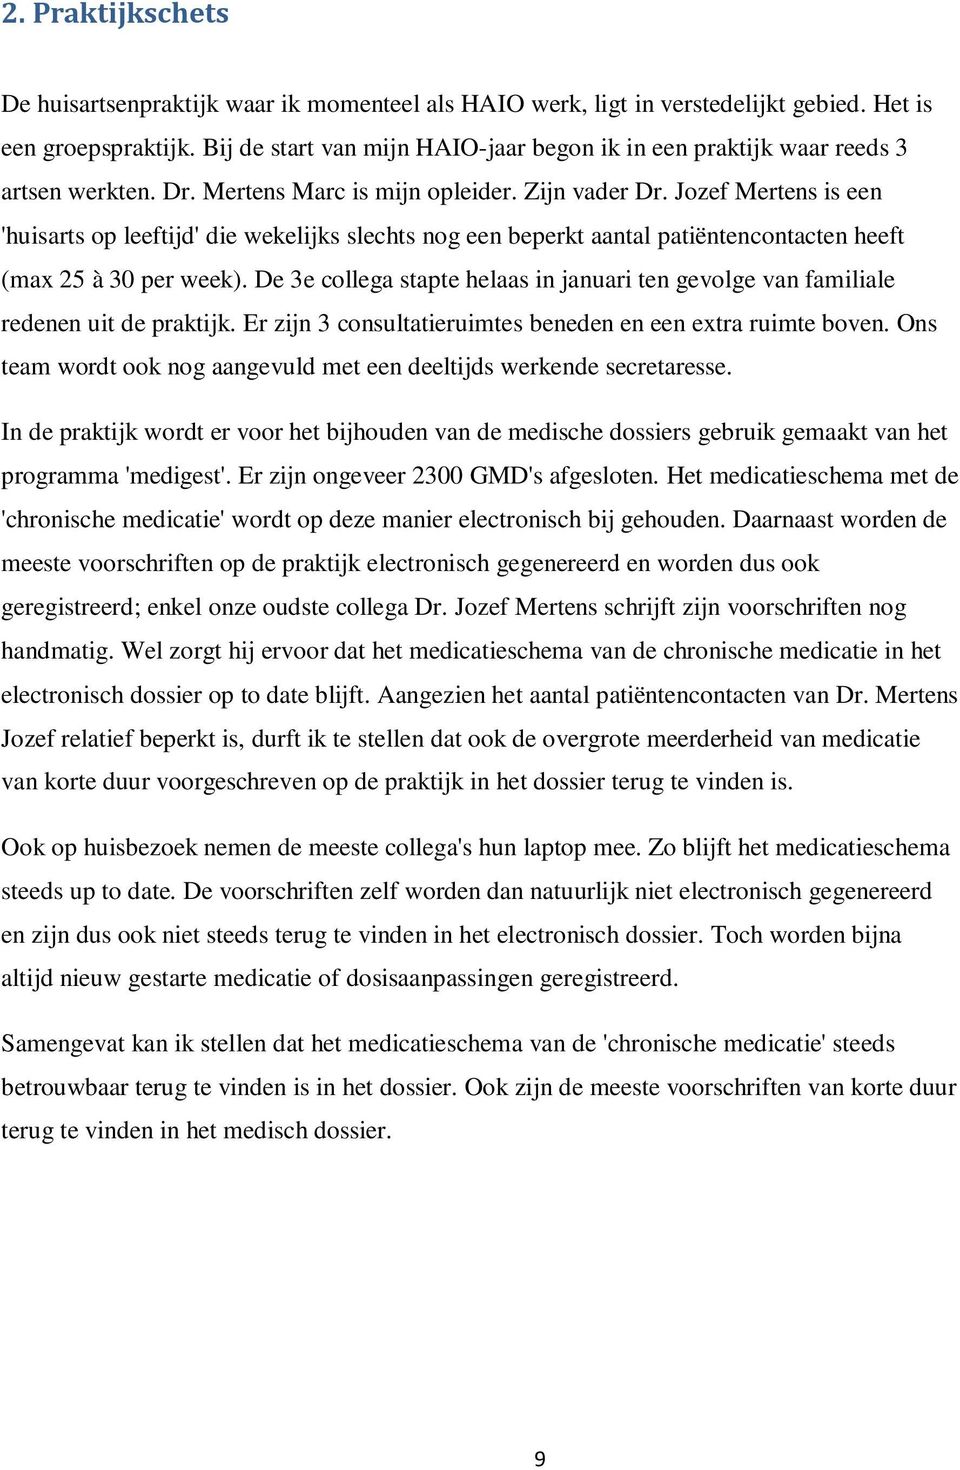 Jozef Mertens is een 'huisarts op leeftijd' die wekelijks slechts nog een beperkt aantal patiëntencontacten heeft (max 25 à 30 per week).